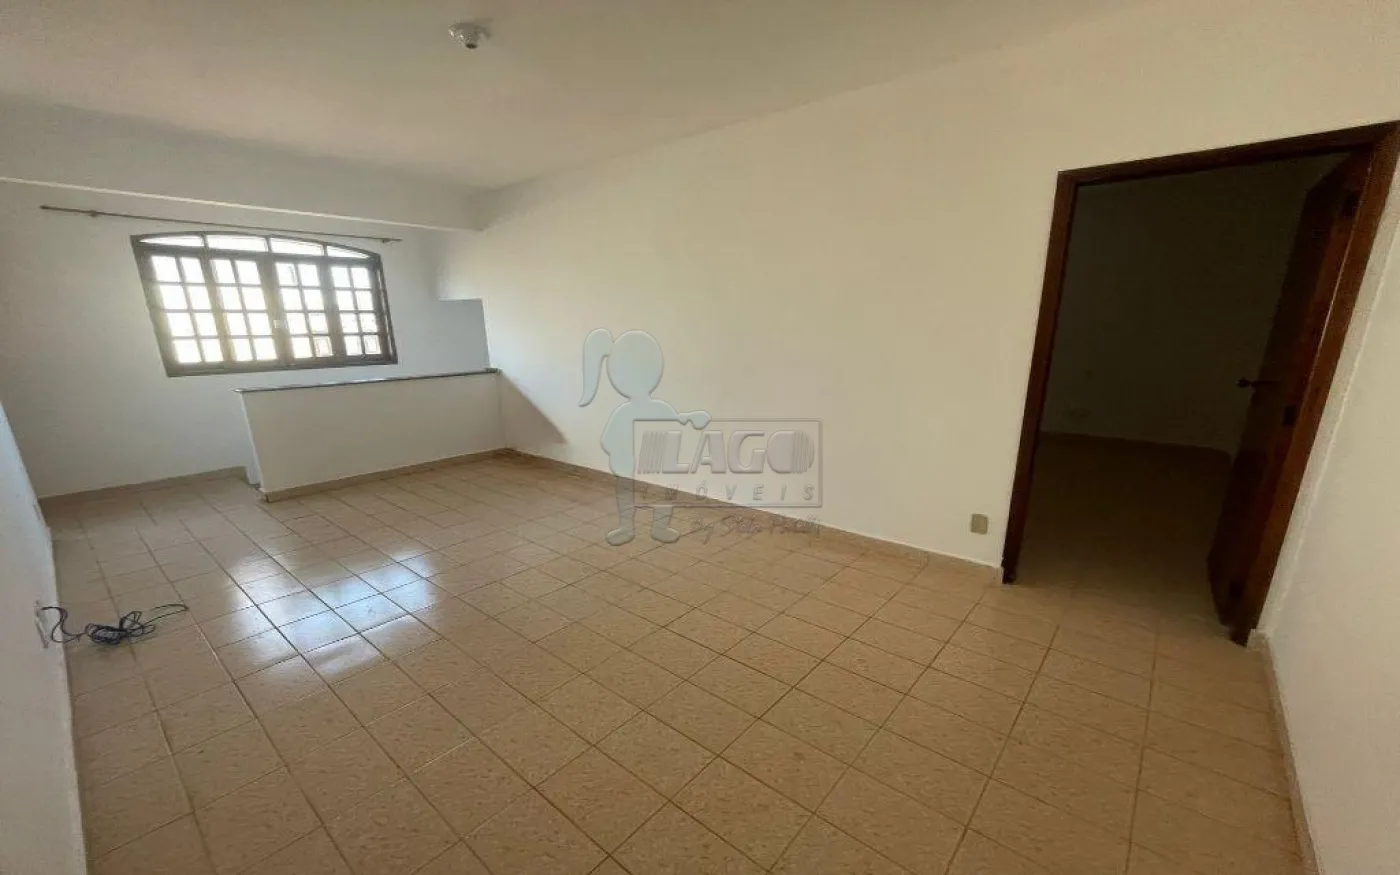 Comprar Casa / Padrão em Sertãozinho R$ 850.000,00 - Foto 5